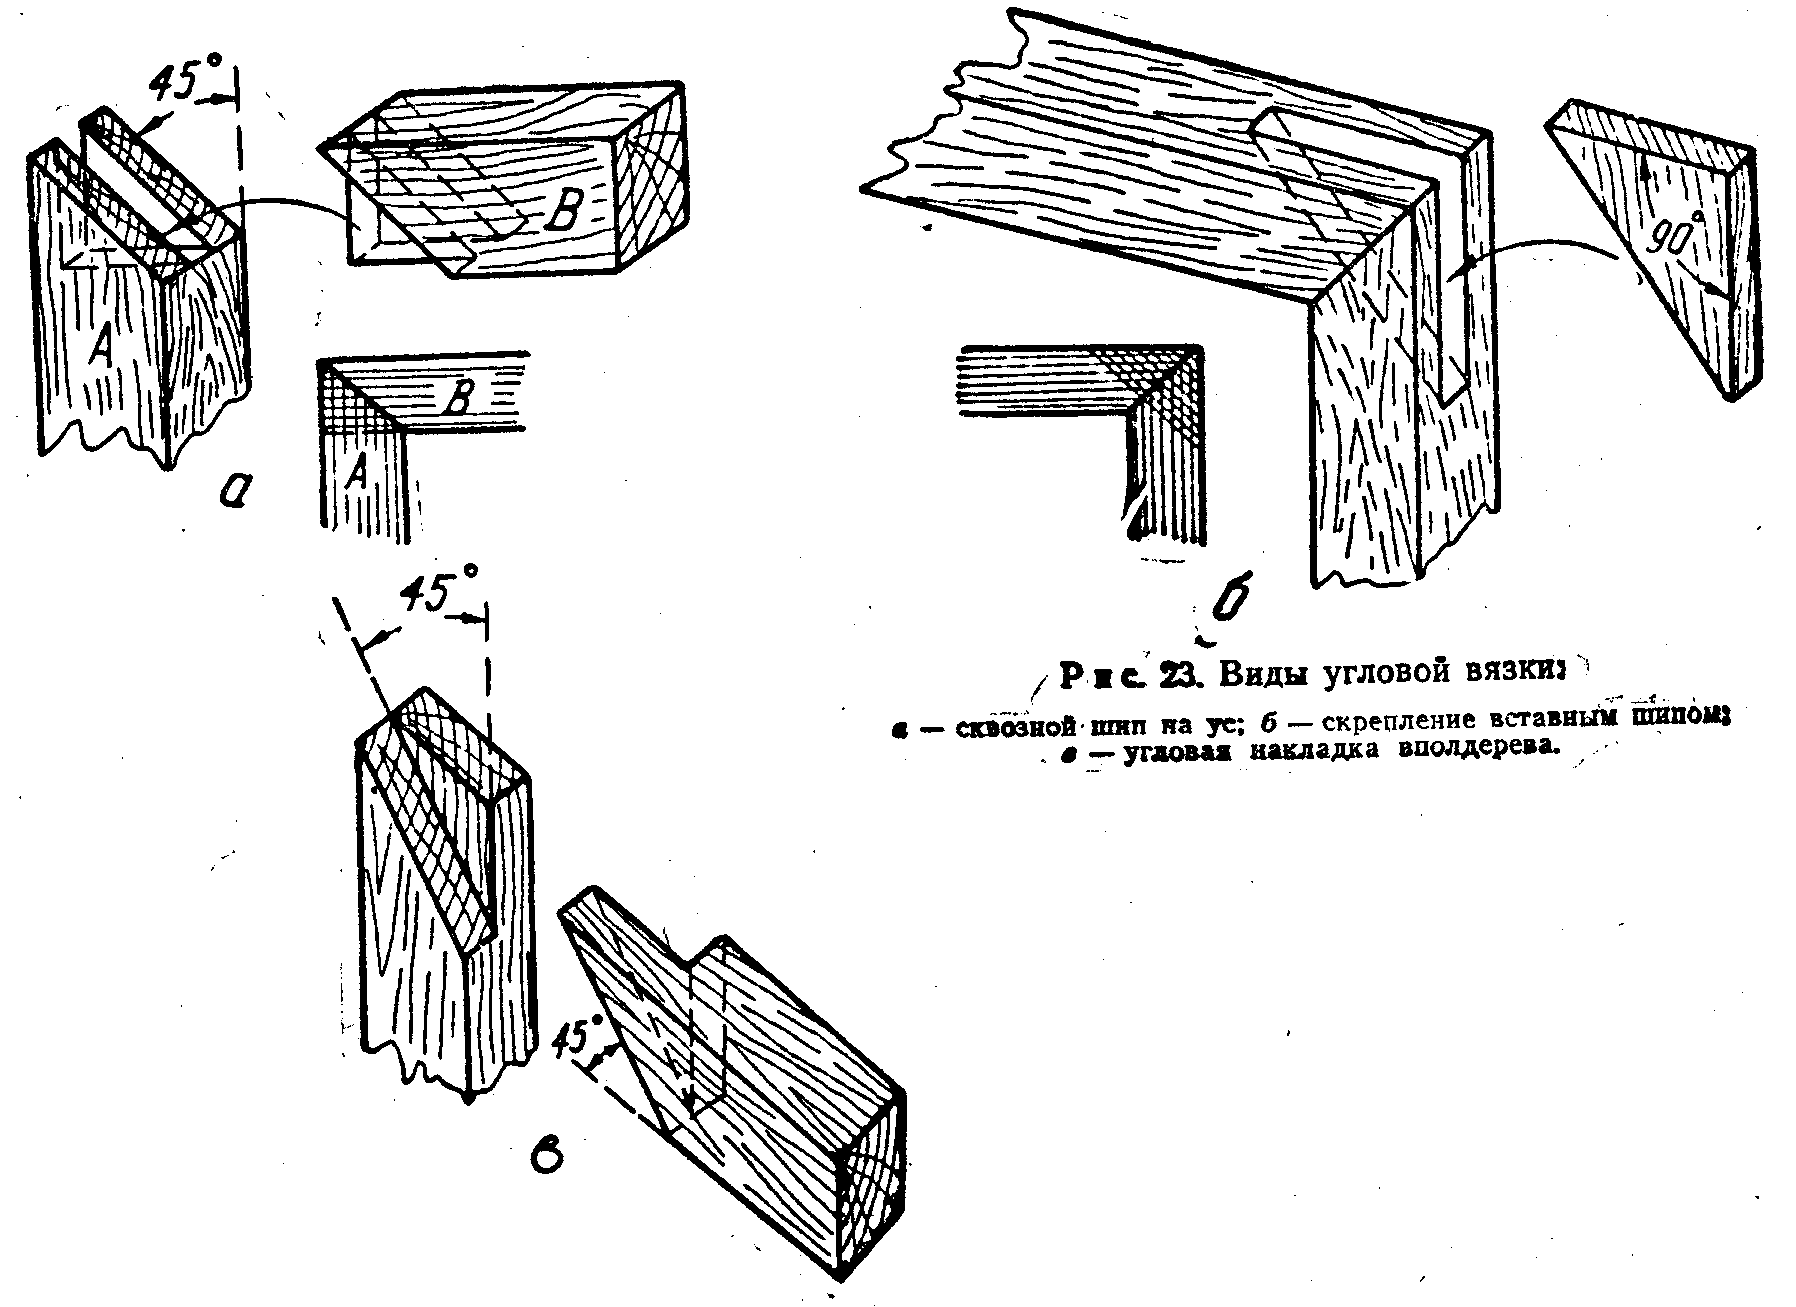 Соединение деревянных деталей: ящичное, стыковое, угловое, типа шип-паз и ласточкин хвост